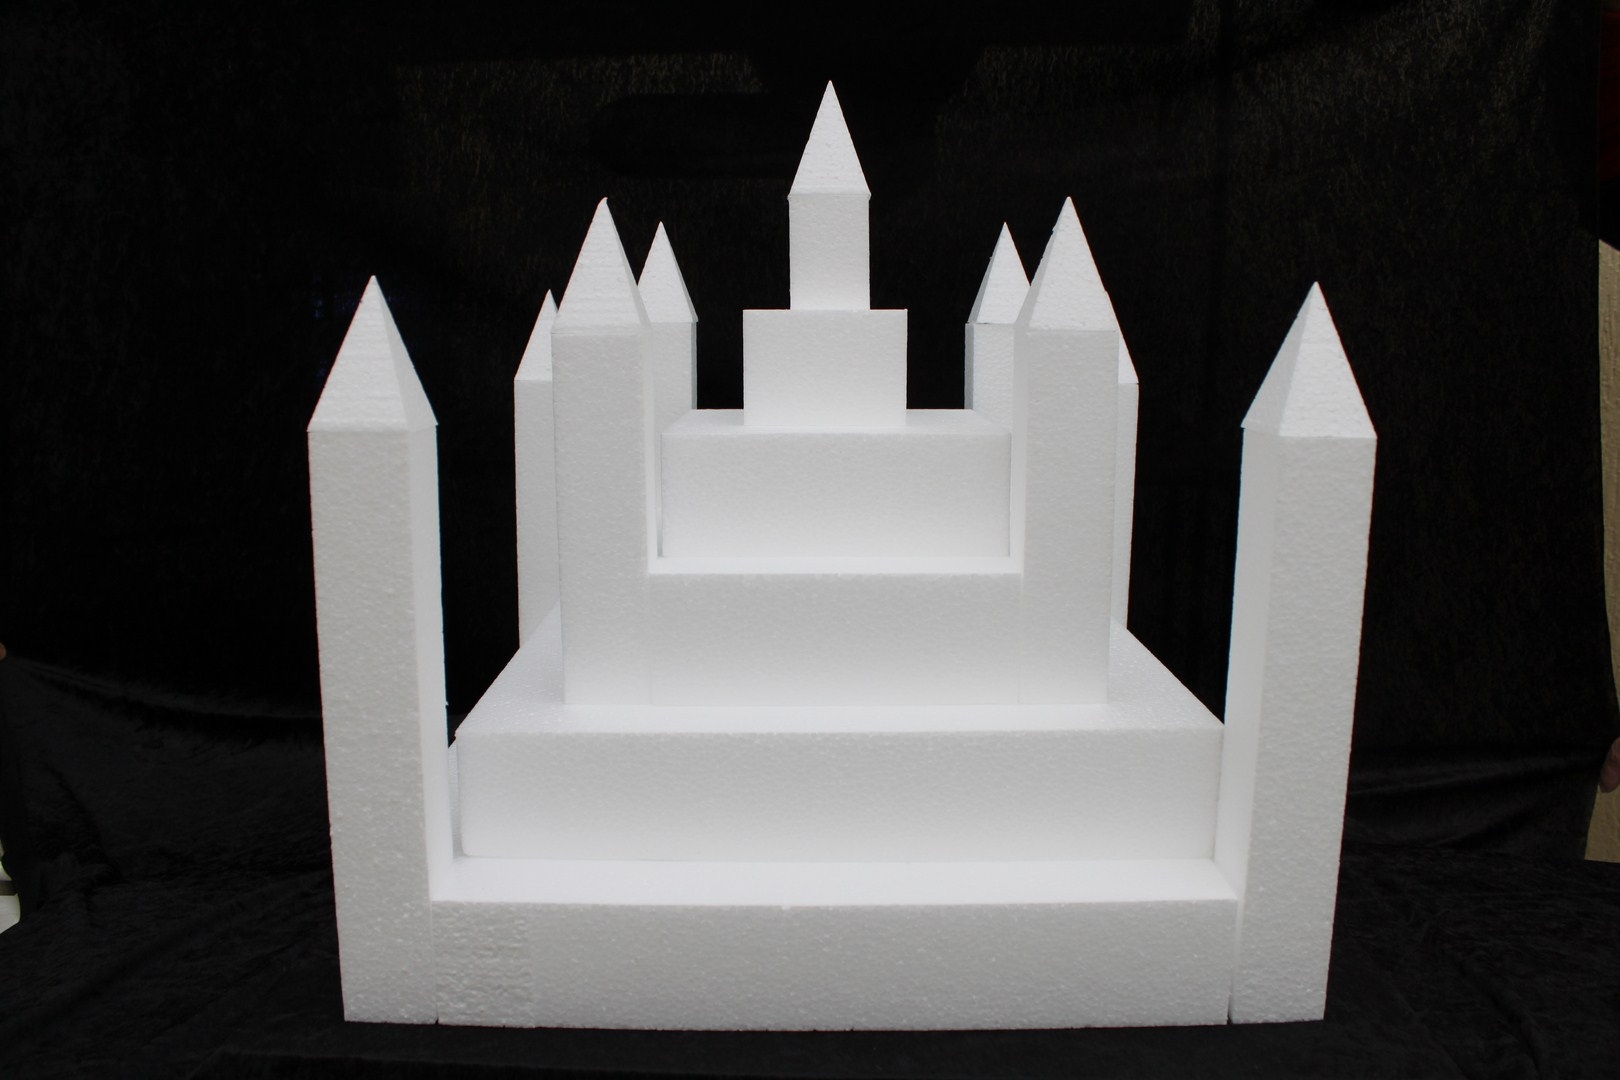 Castle cake dummy set 23 pcs - 50 x 50 cm, 49 cm high